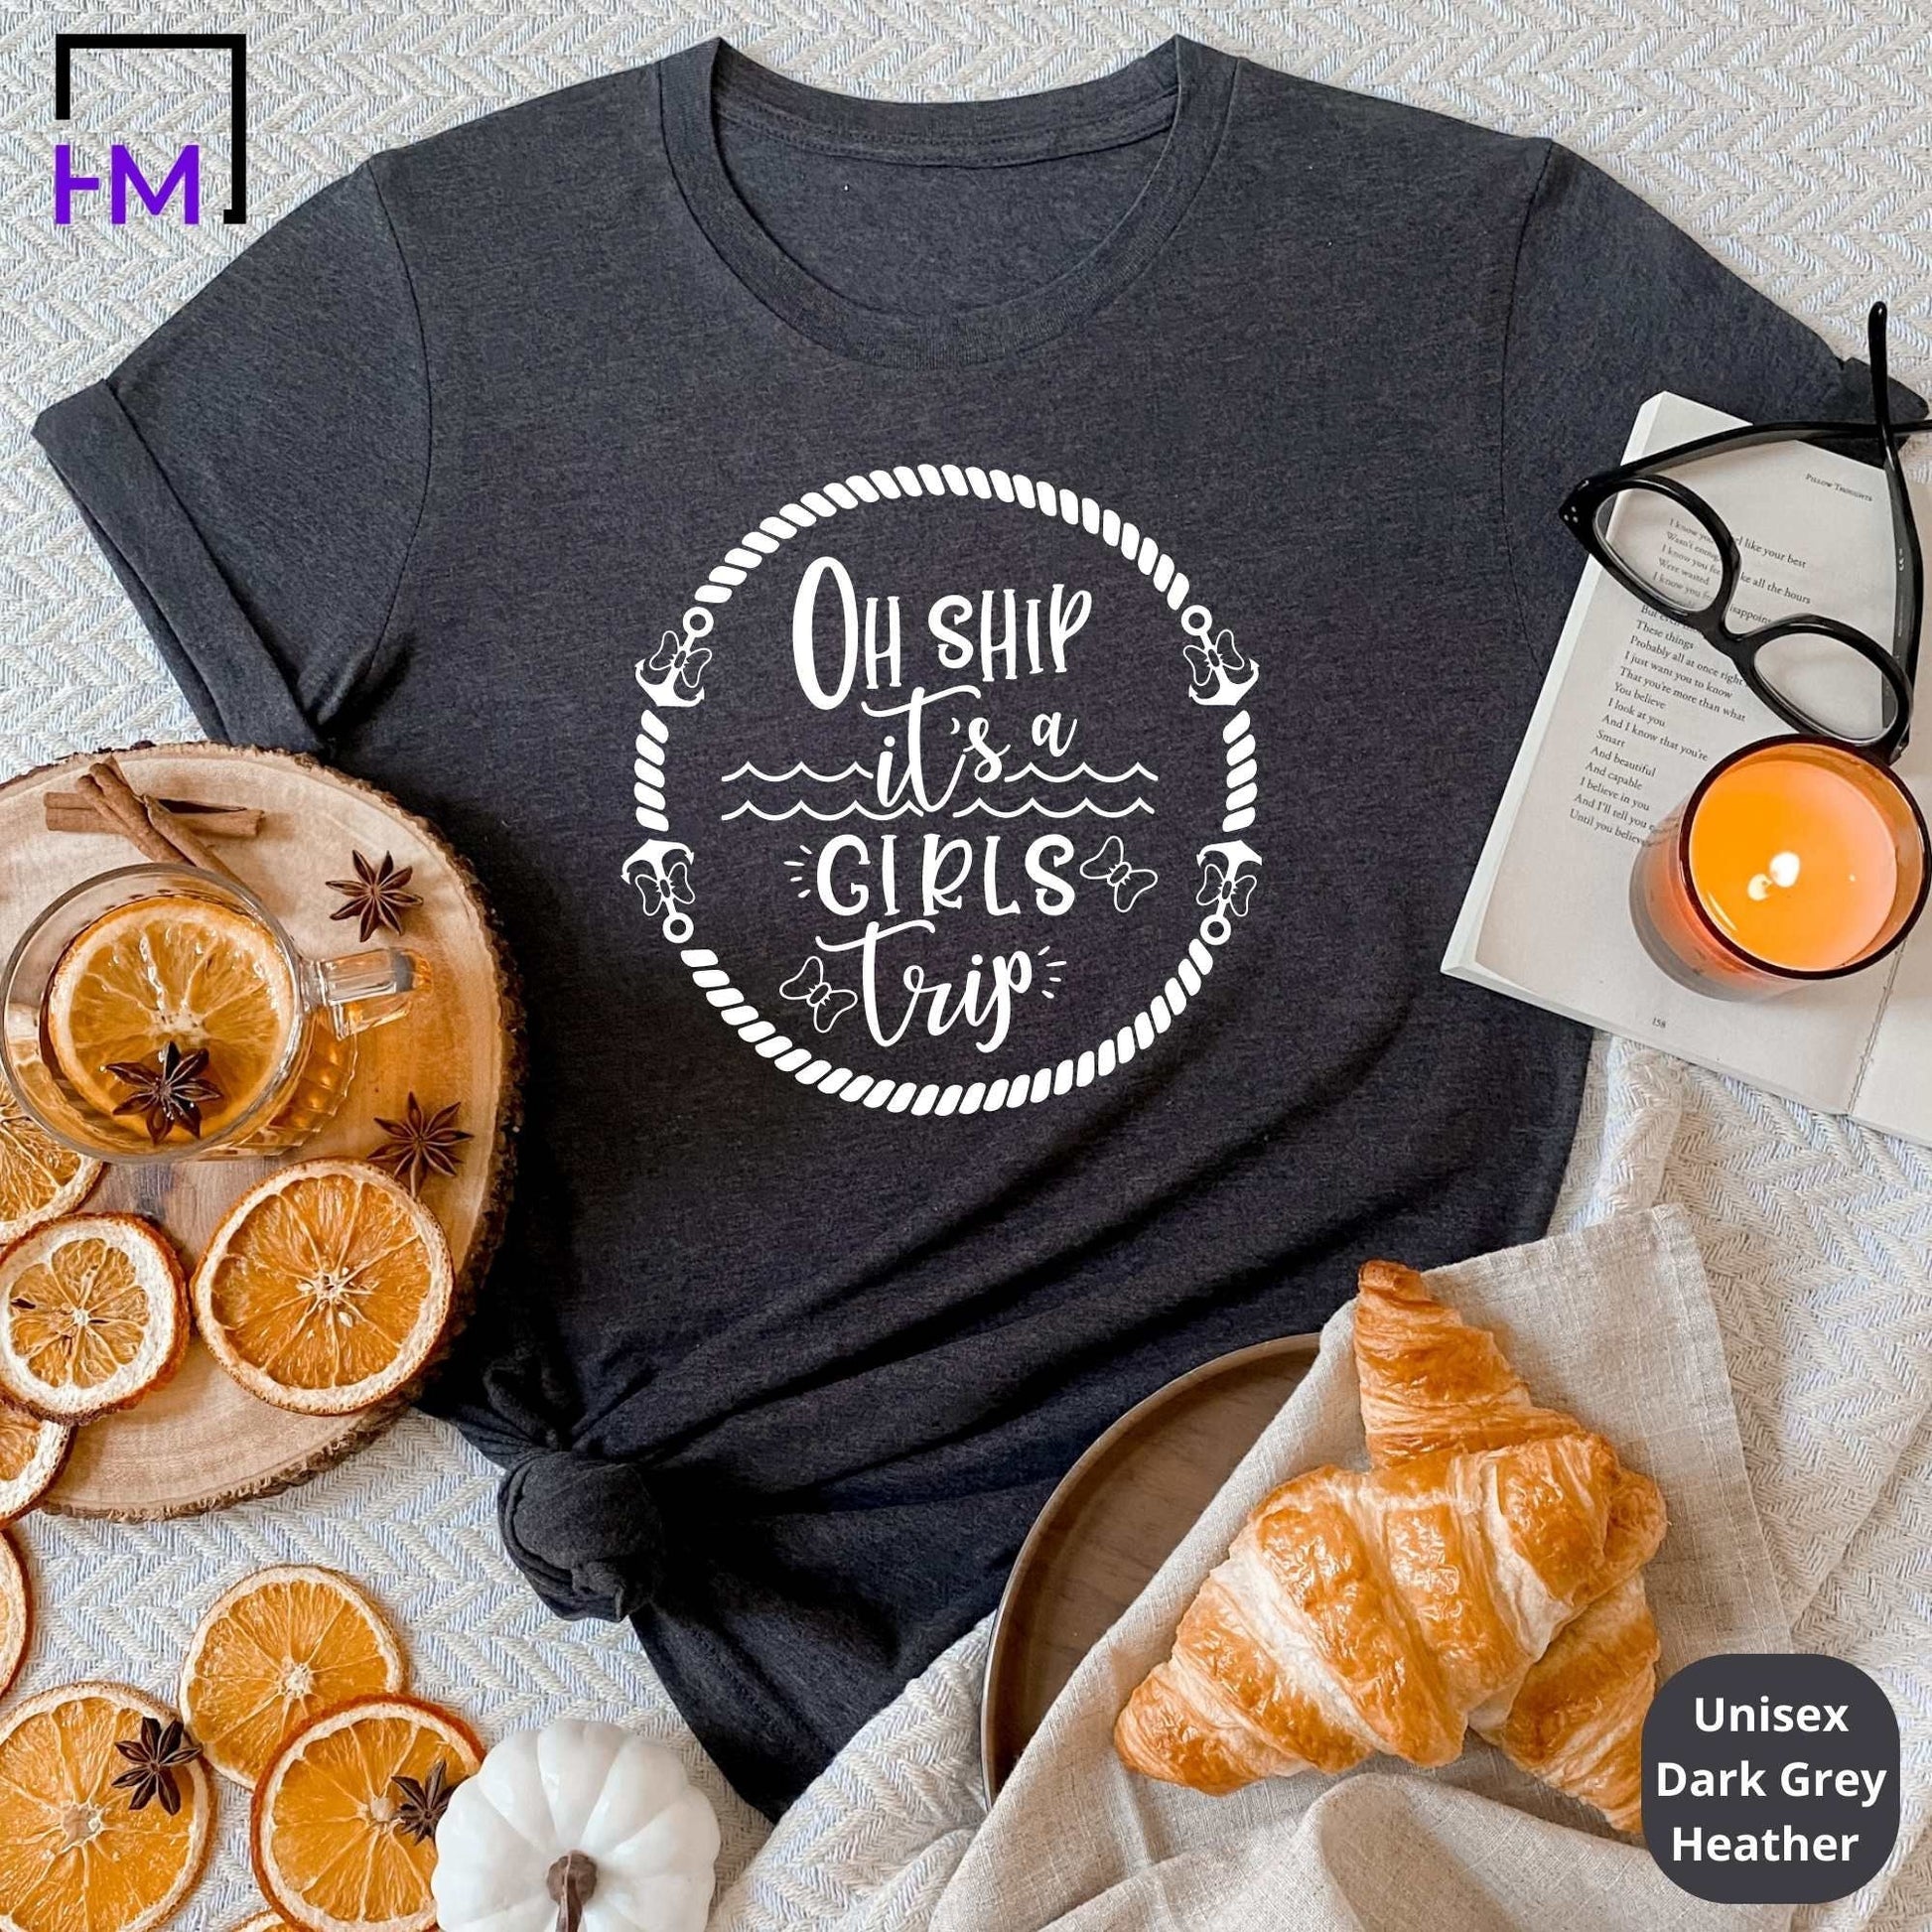 Oh Ship It's A Girls Trip, Tank Top & T-Shirt HMDesignStudioUS